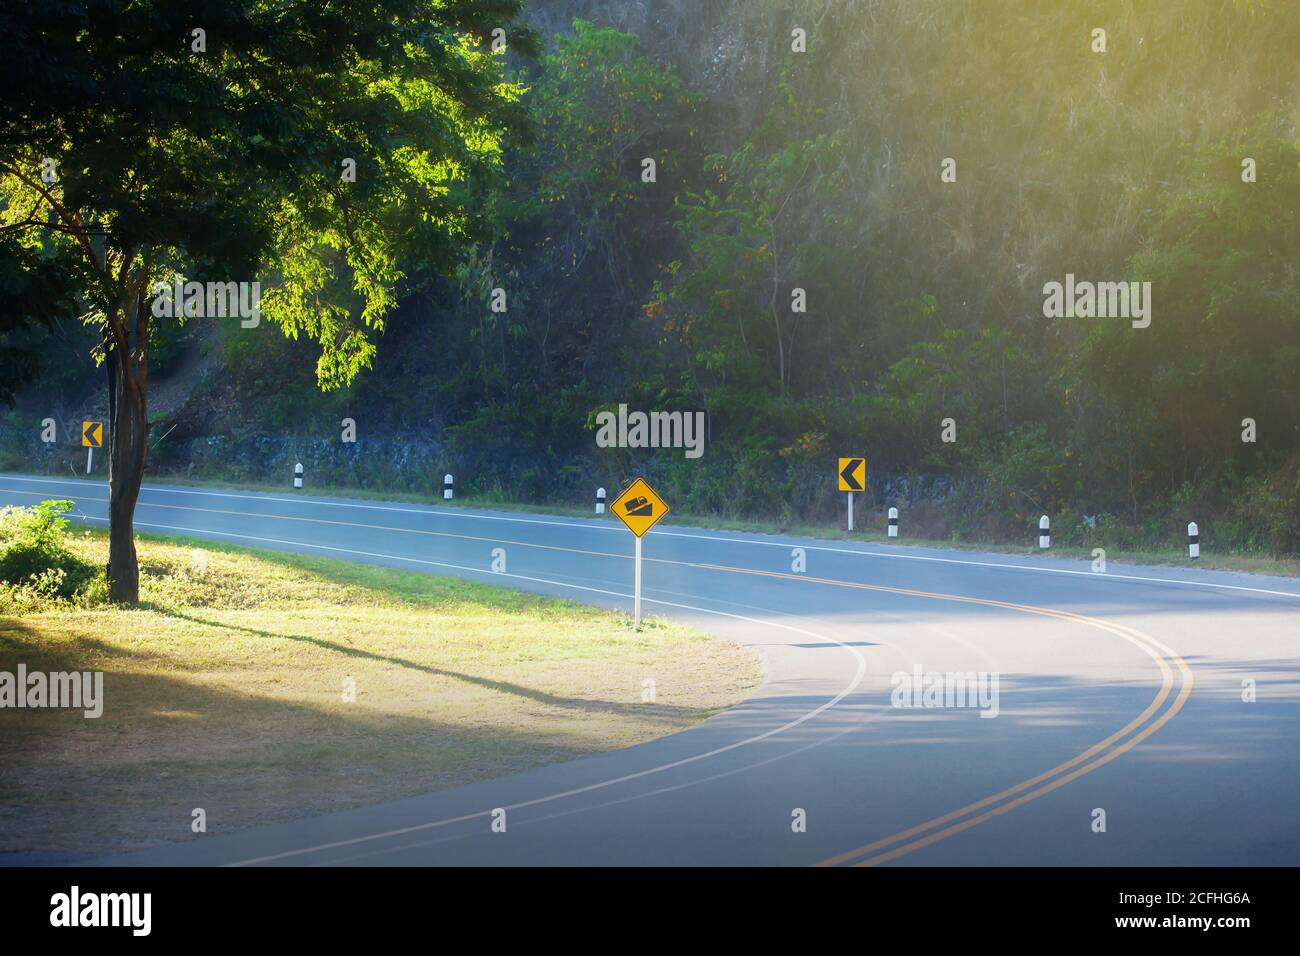 Une route forestière courbe vide et des panneaux d'avertissement de route jaune au lever du soleil. Concentrez-vous sur la route asphaltée. Banque D'Images